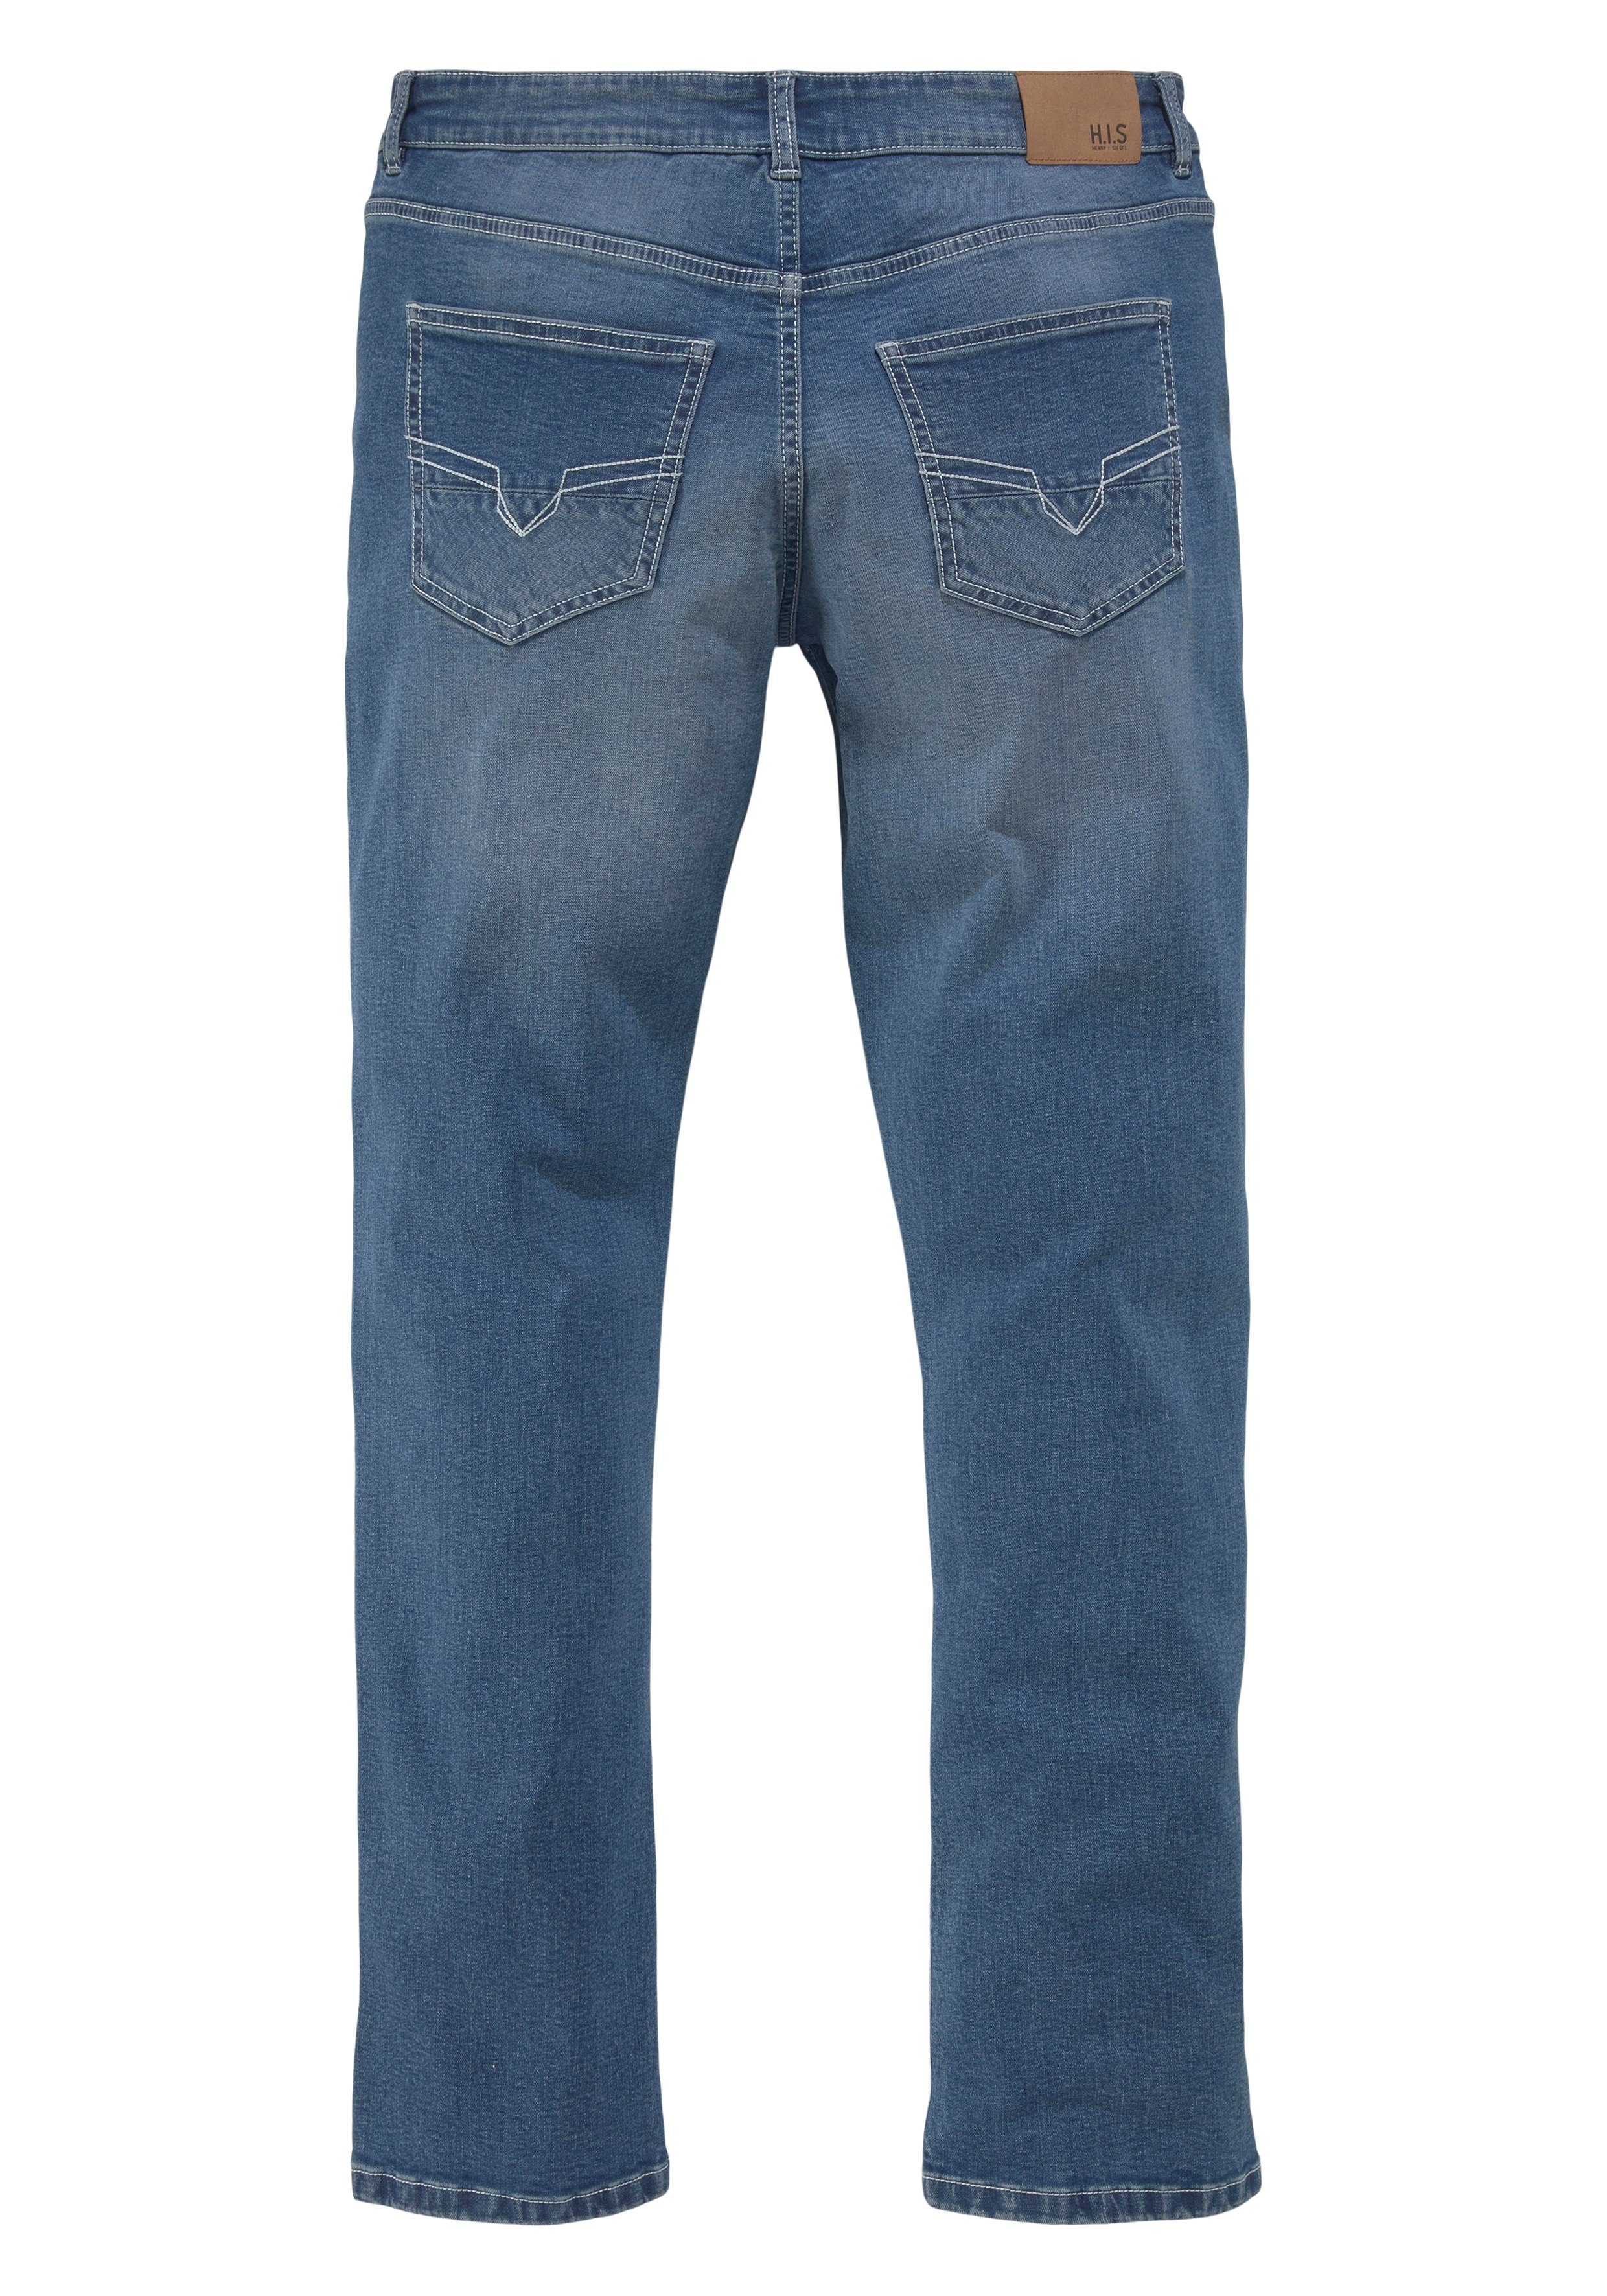 Herren Jeans H.I.S Straight-Jeans BUCK Ökologische, wassersparende Produktion durch Ozon Wash